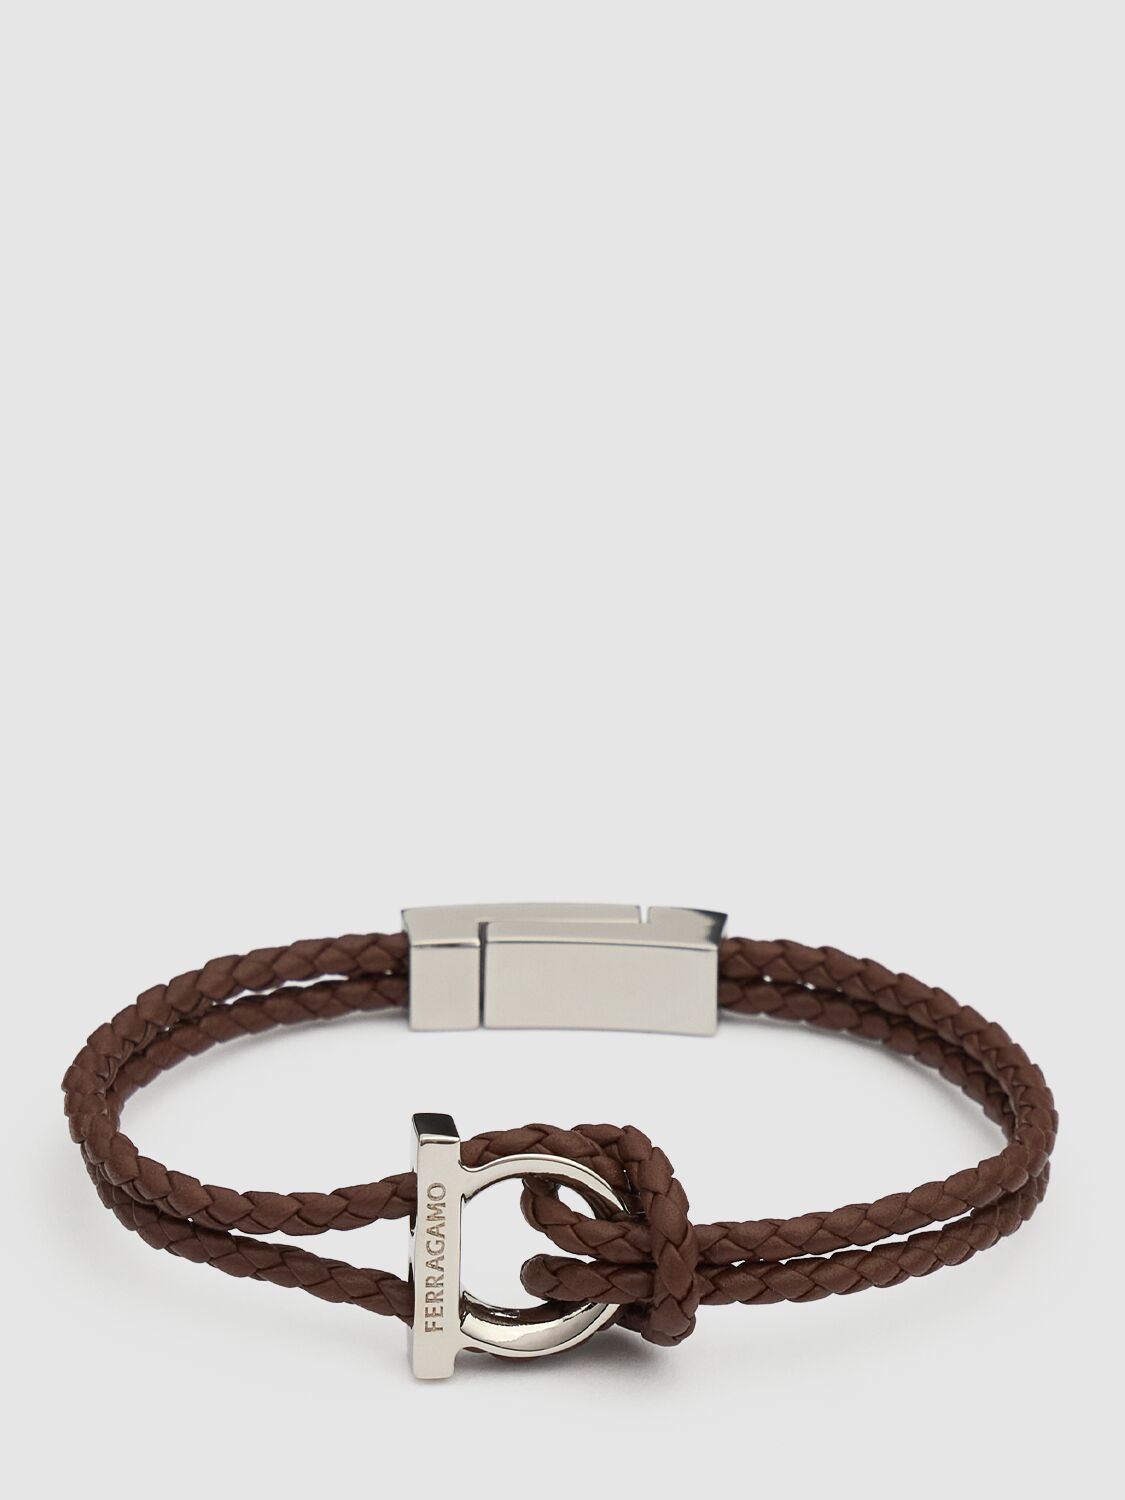 Ferragamo 17cm Gancio Braided Leather Bracelet In Brown